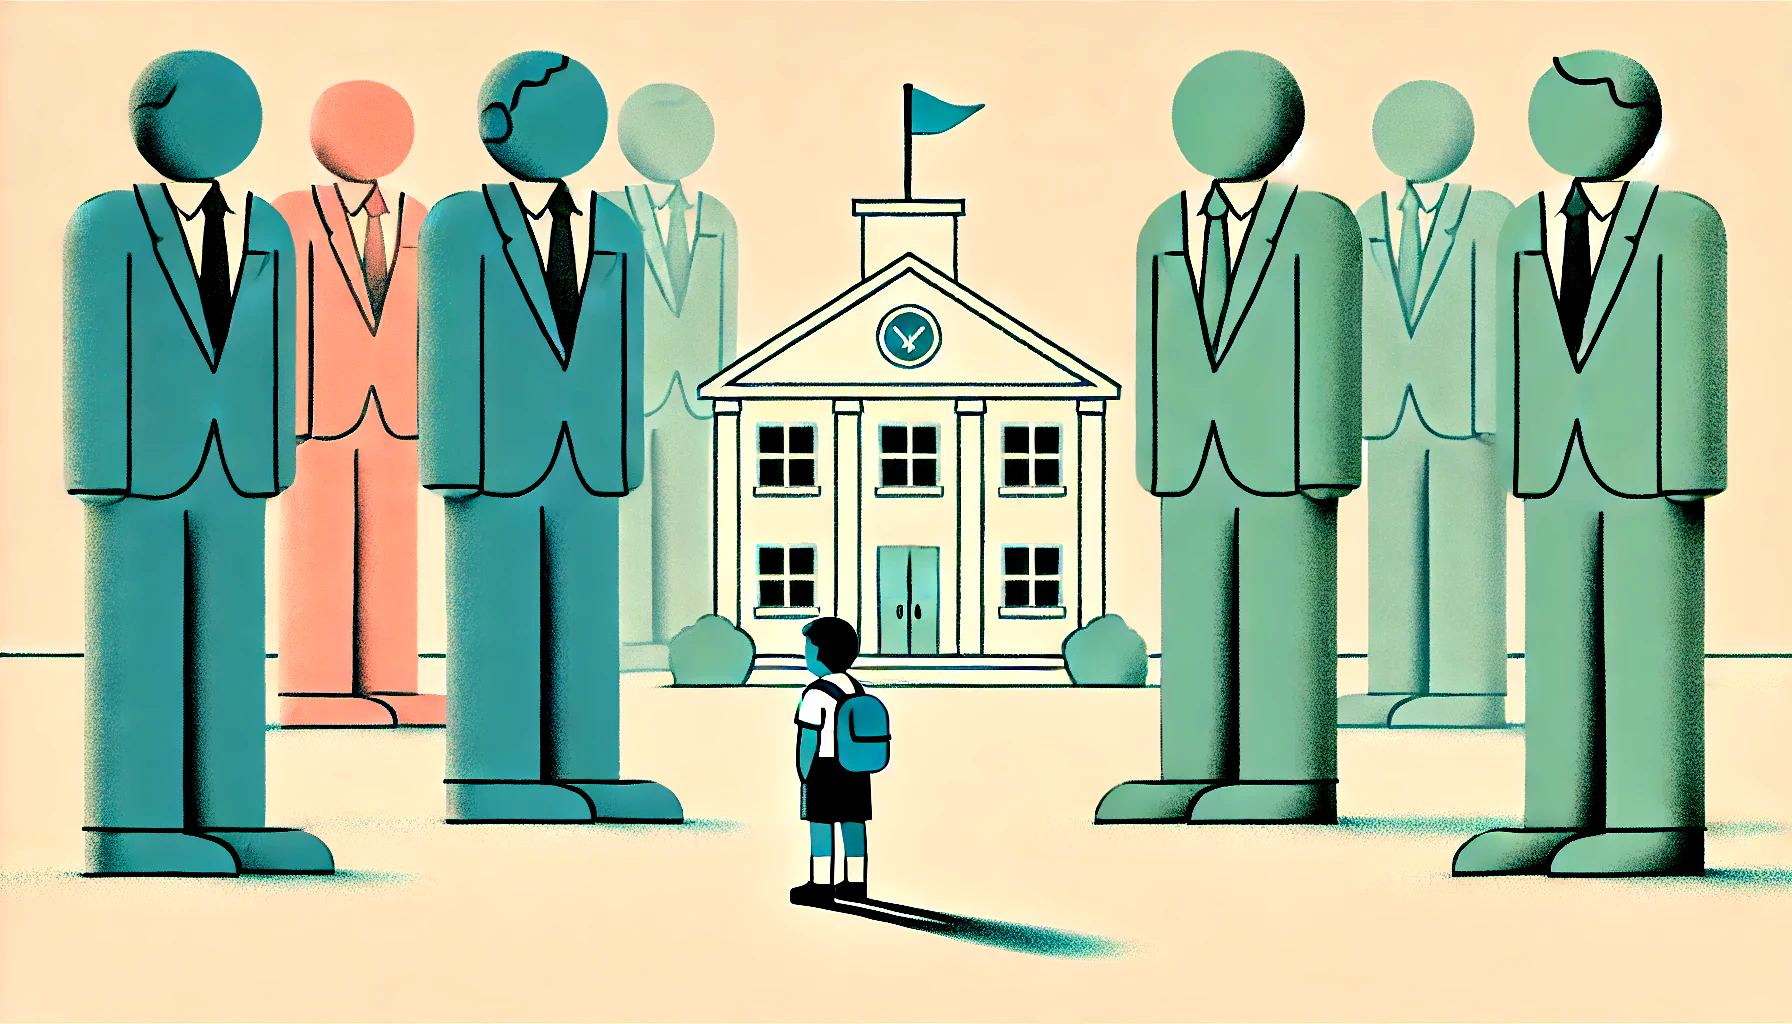 AI gegenereerde afbeelding van kind voor schoolgebouw met grote mannen in pakken om het kind heen.